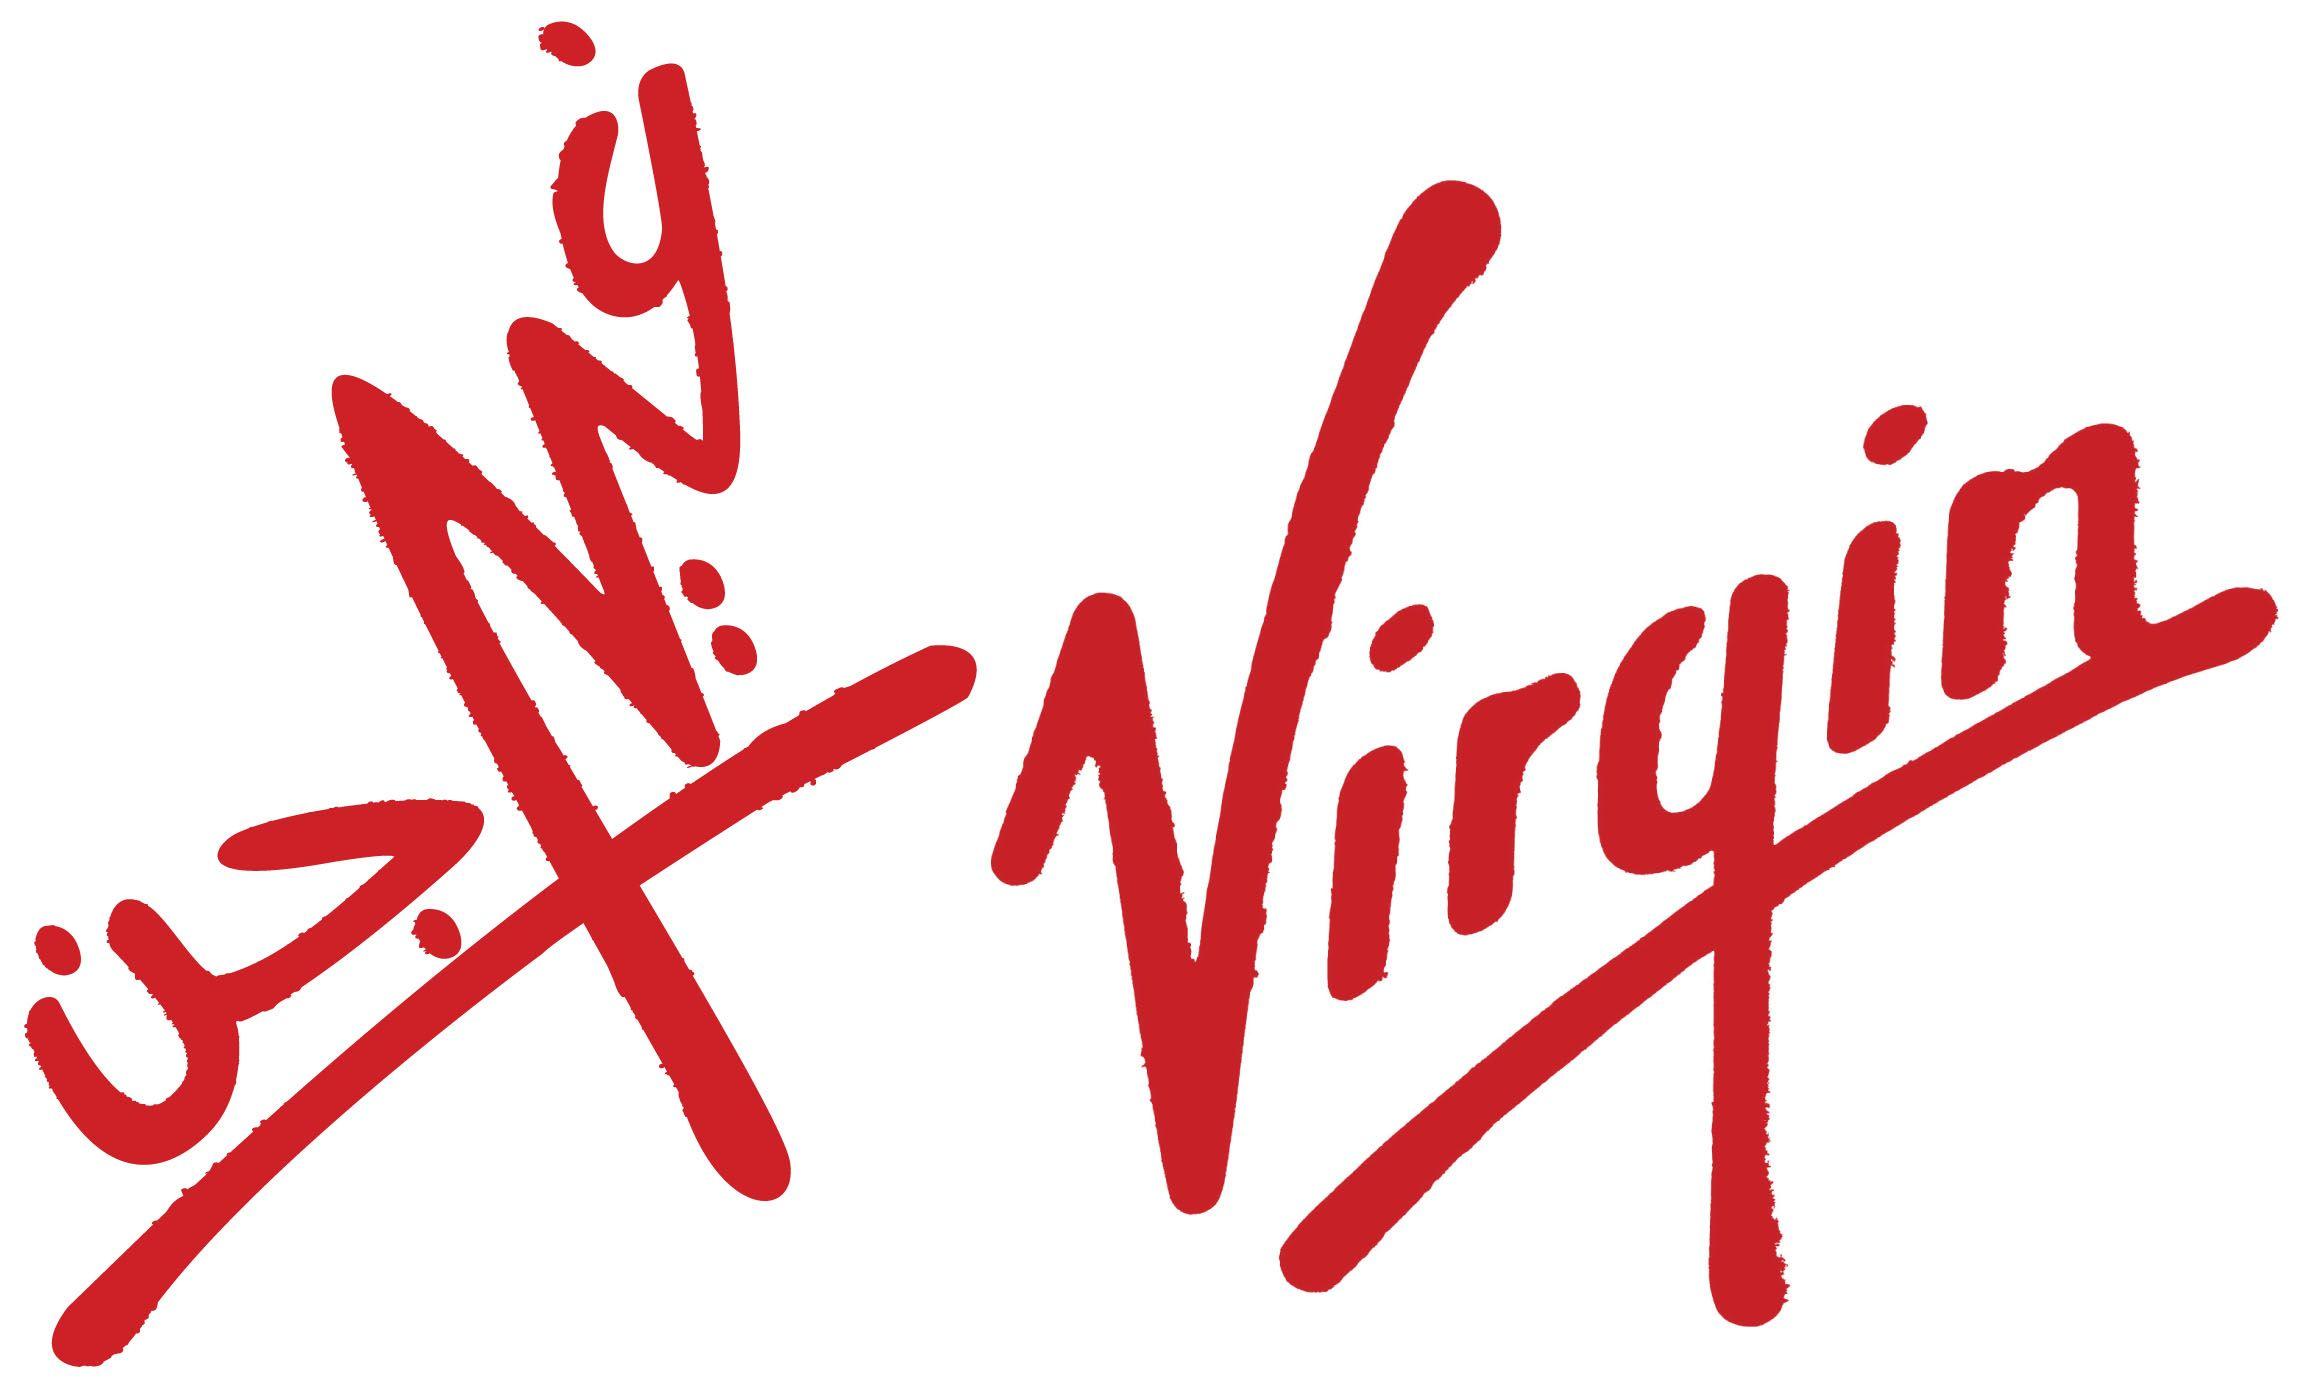 Virgin cocks. Вирджин лого. Логотип виргин. Надпись Virgin. Virgin Voyages логотип.